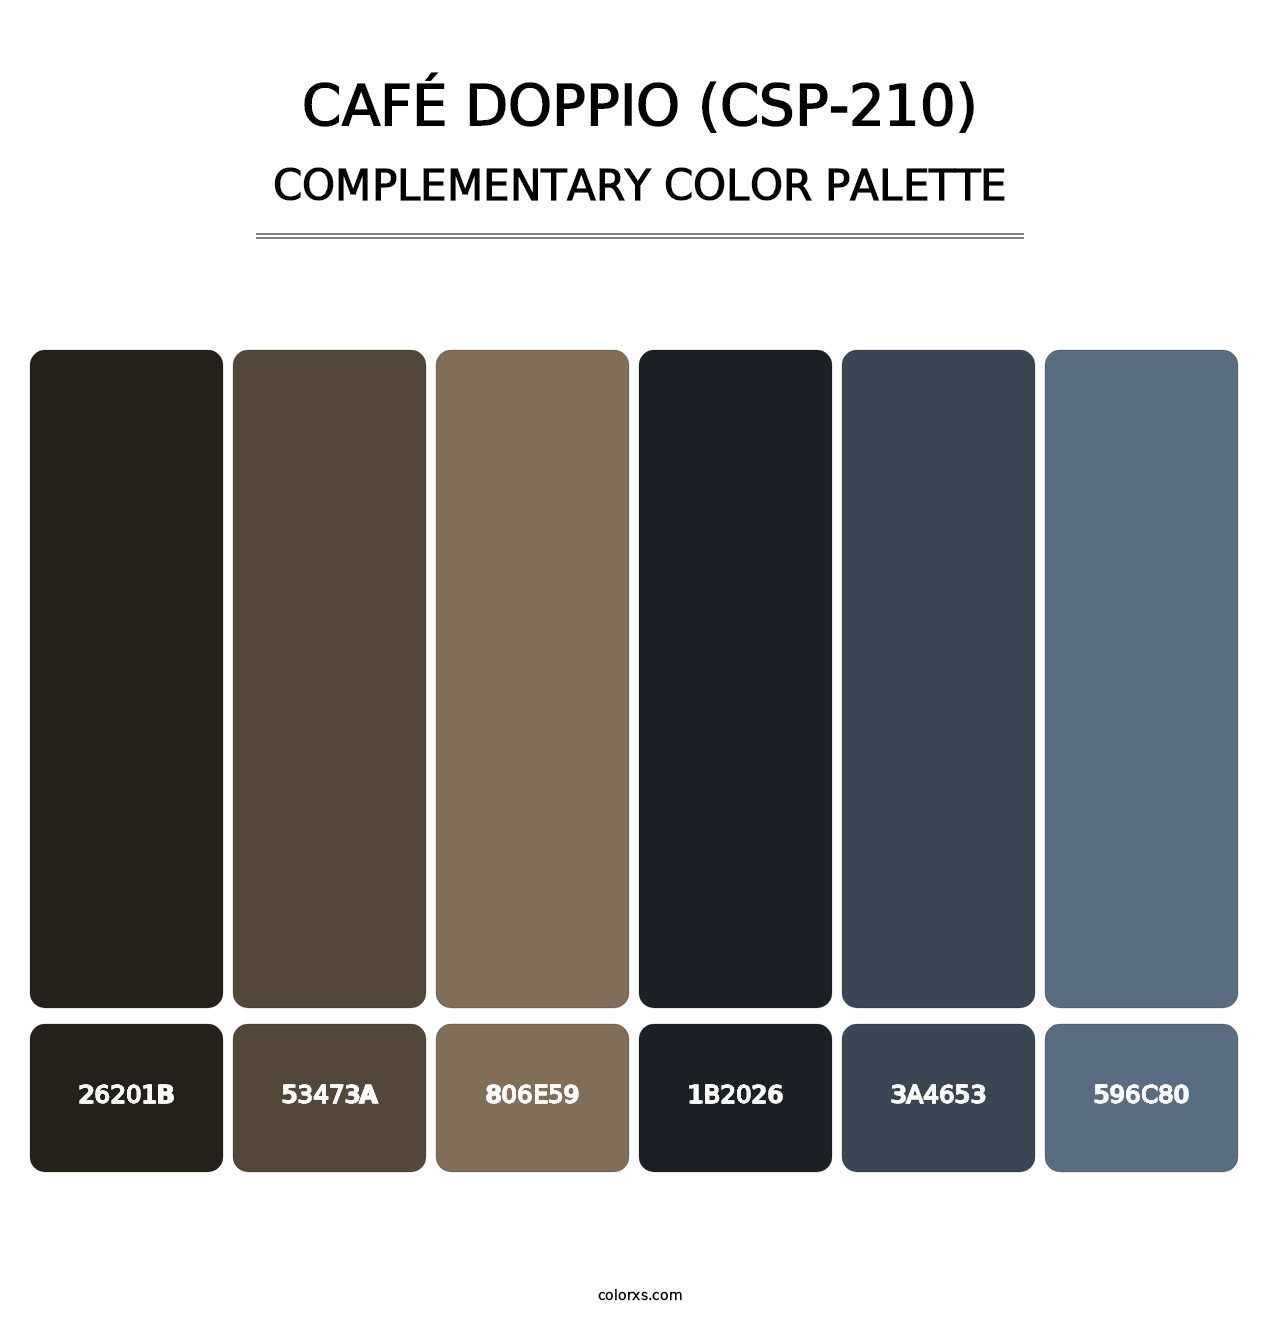 Café Doppio (CSP-210) - Complementary Color Palette